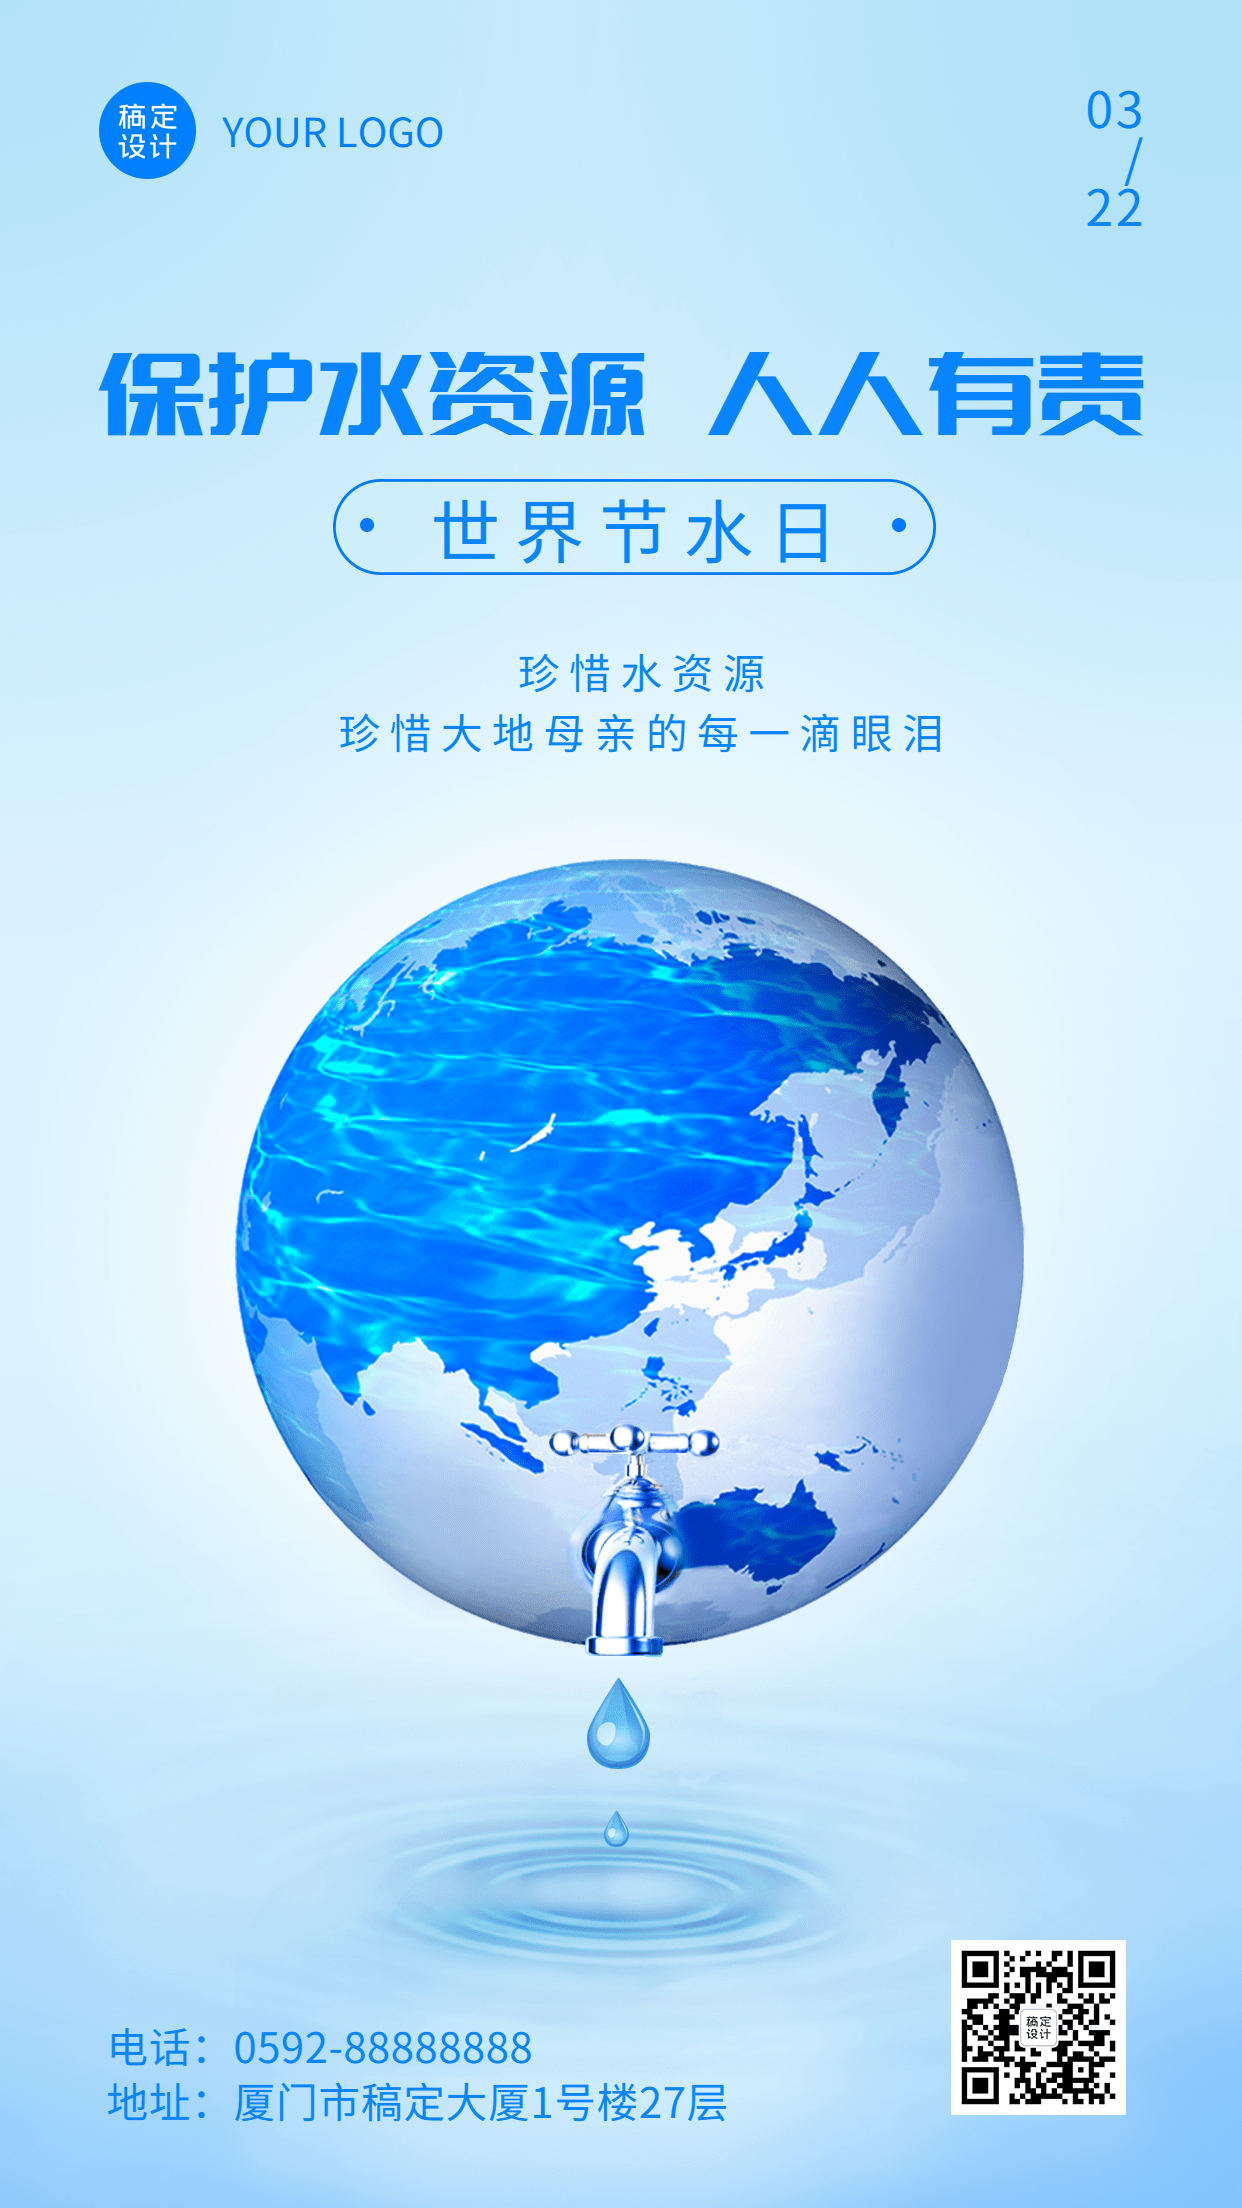 世界节水日节日宣传简约手机海报